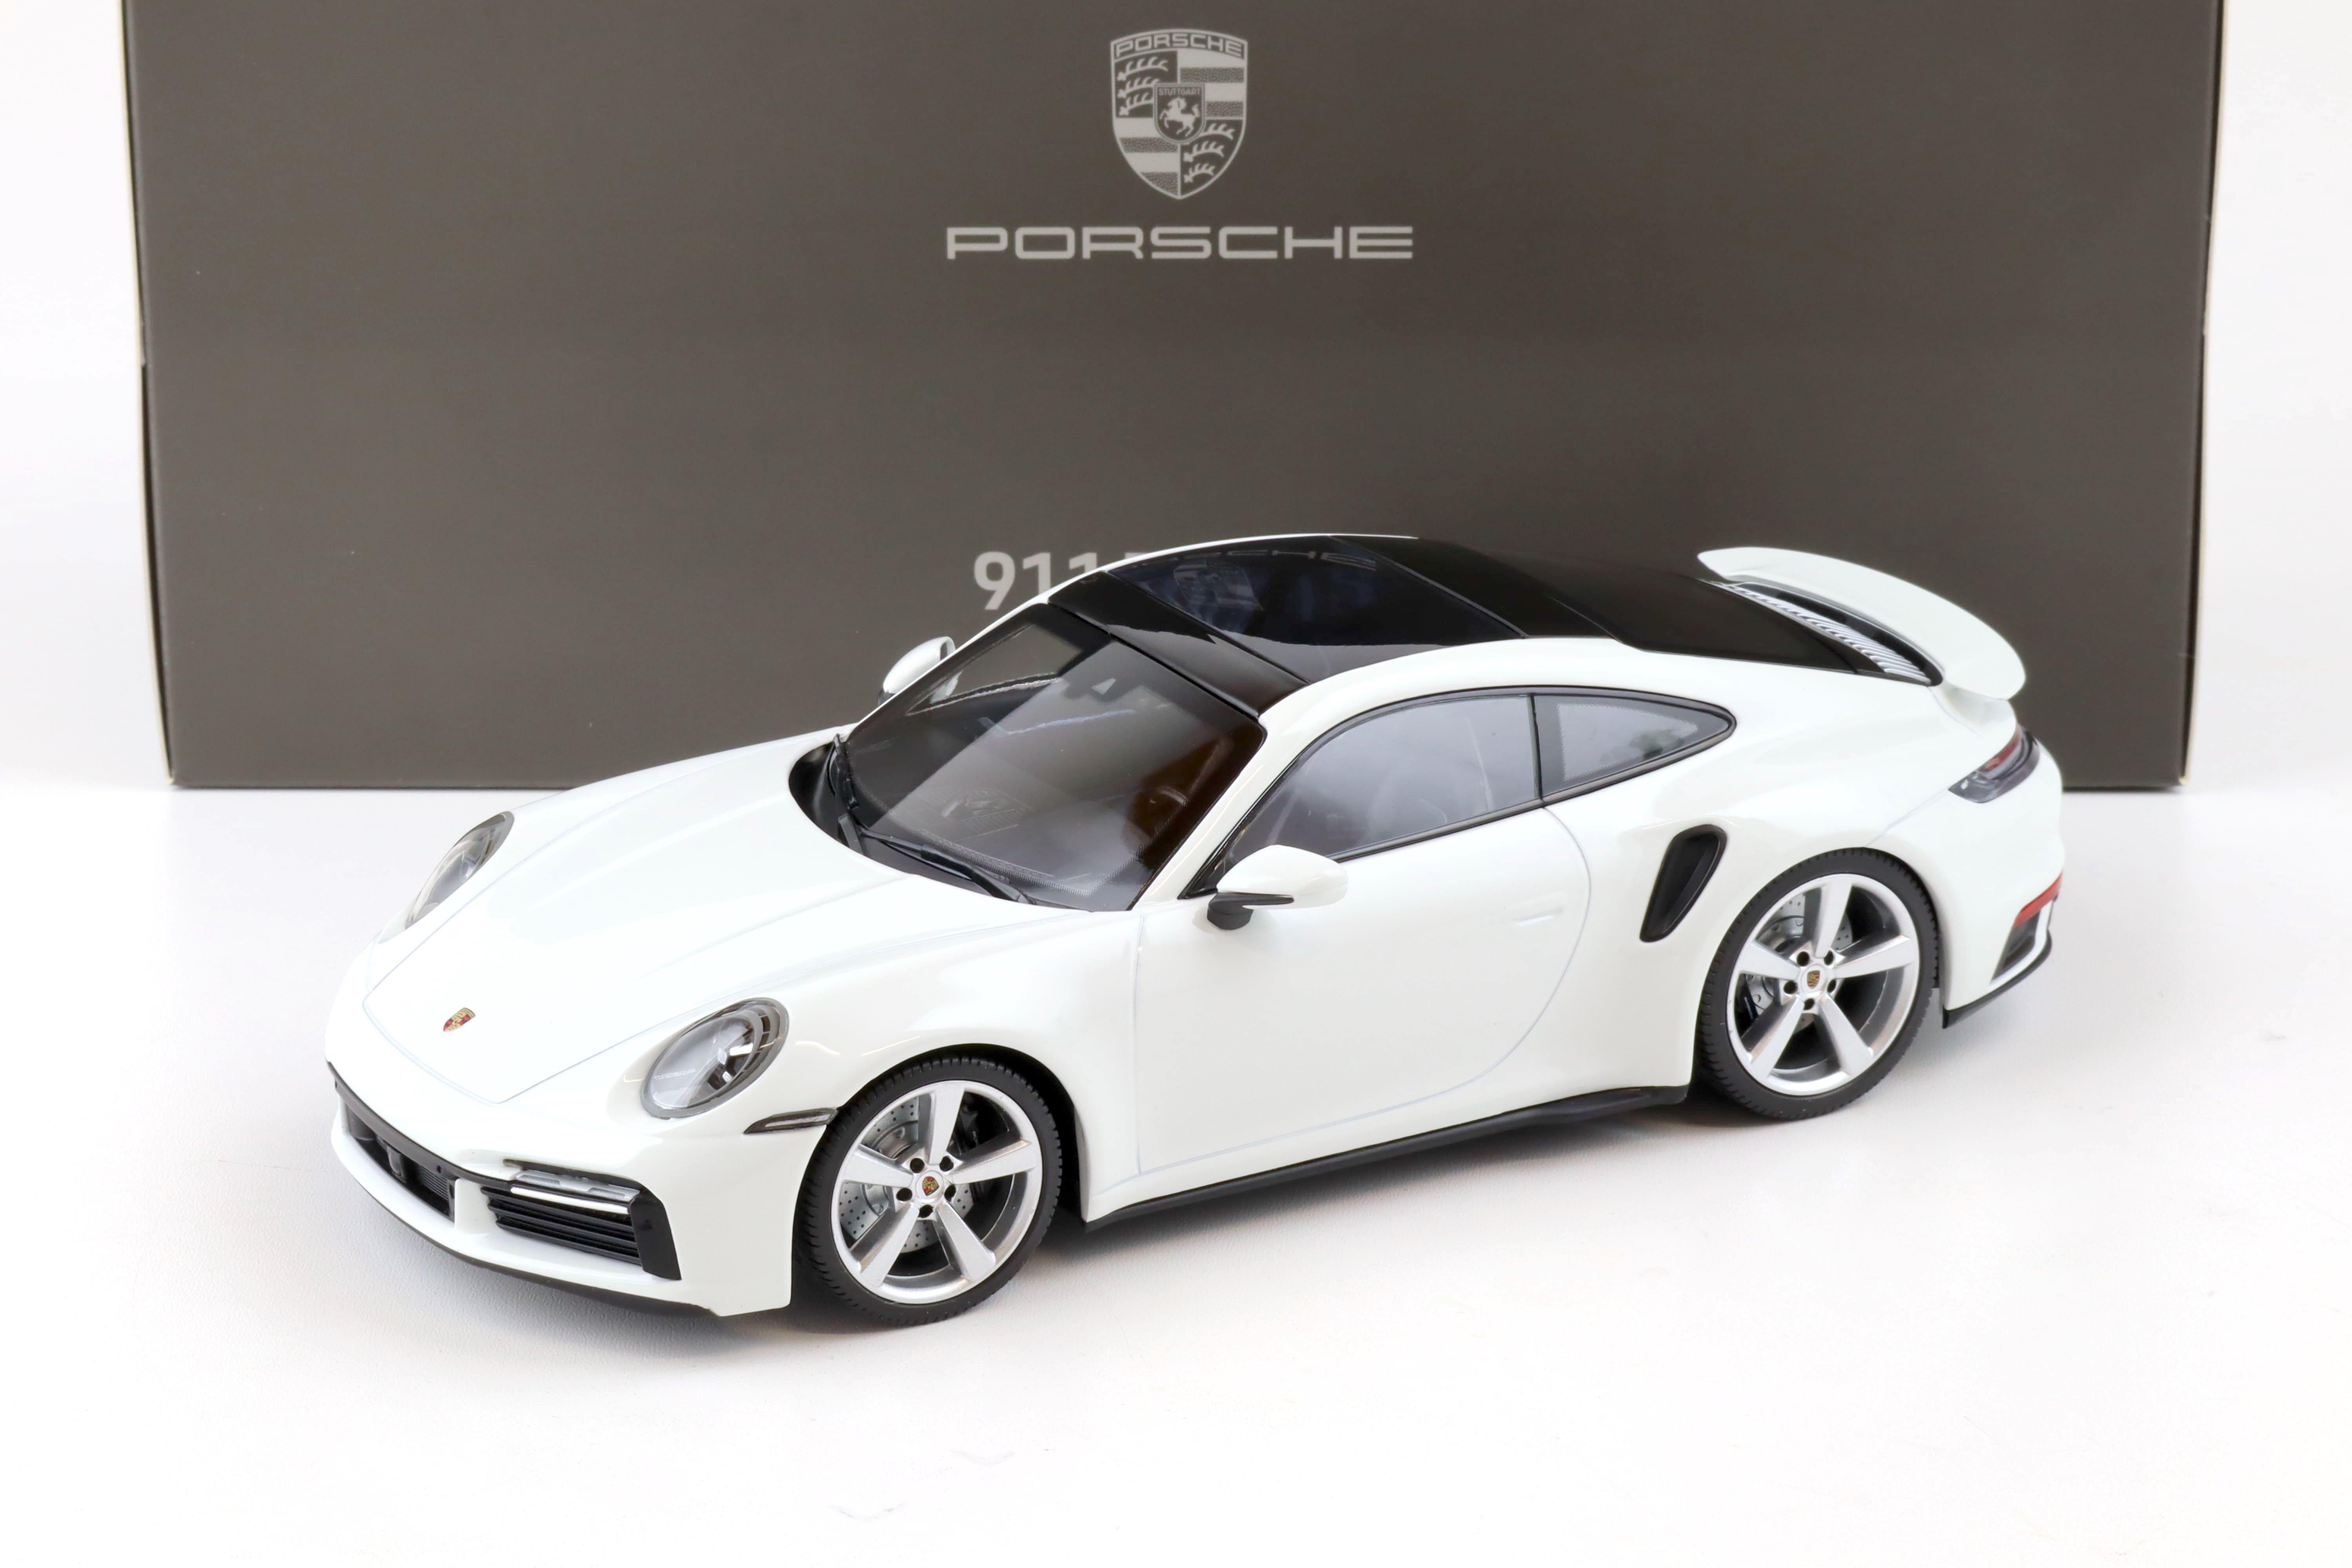 1:18 Minichamps Porsche 911 (992) Turbo S Coupe white WAP DEALER